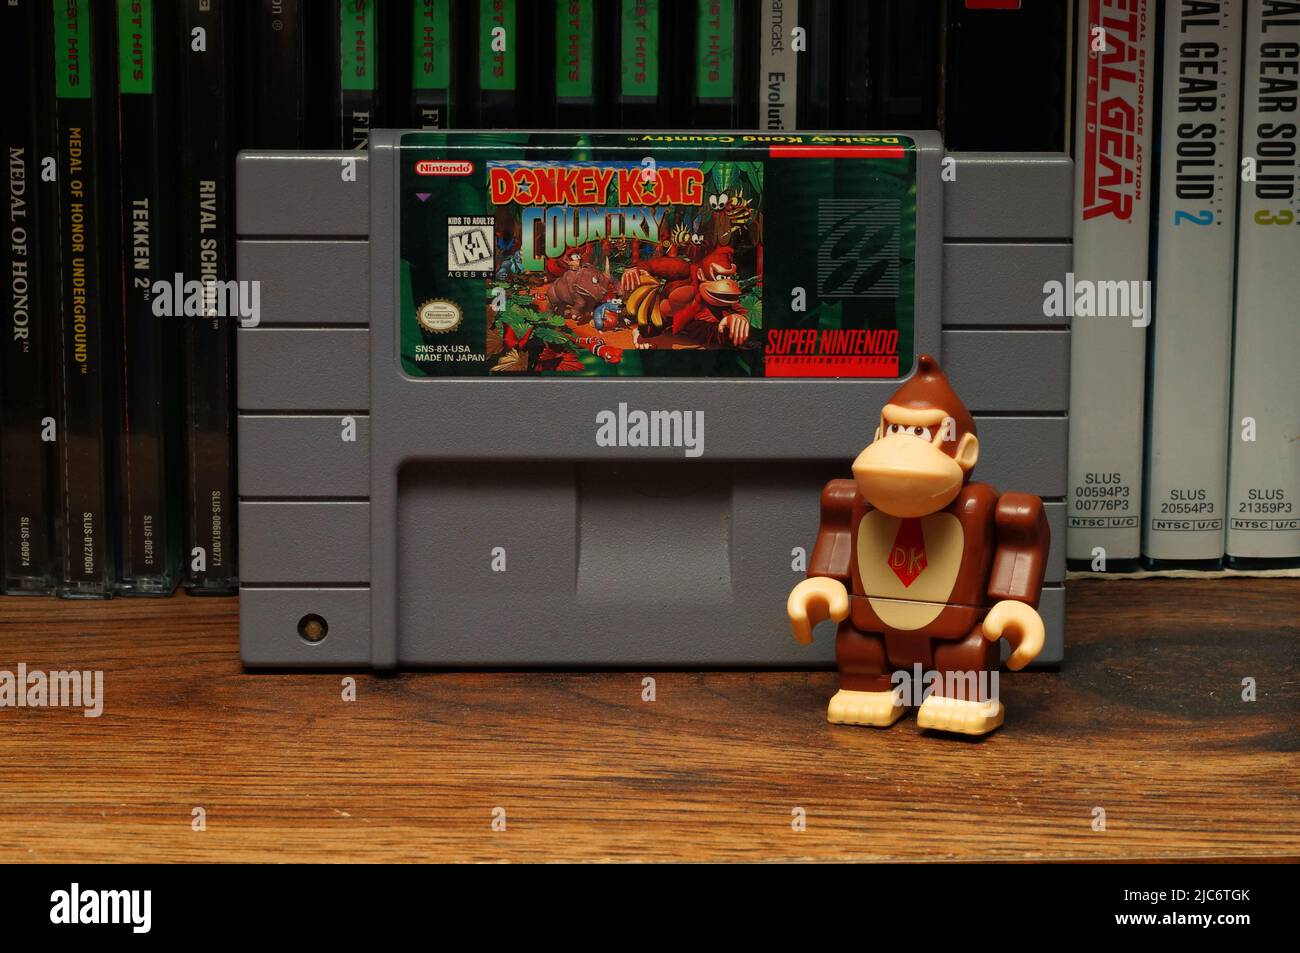 Un jouet Donkey Kong posé à côté du jeu vidéo Donkey Kong Country (État de Caroline du Nord, 2022) Banque D'Images